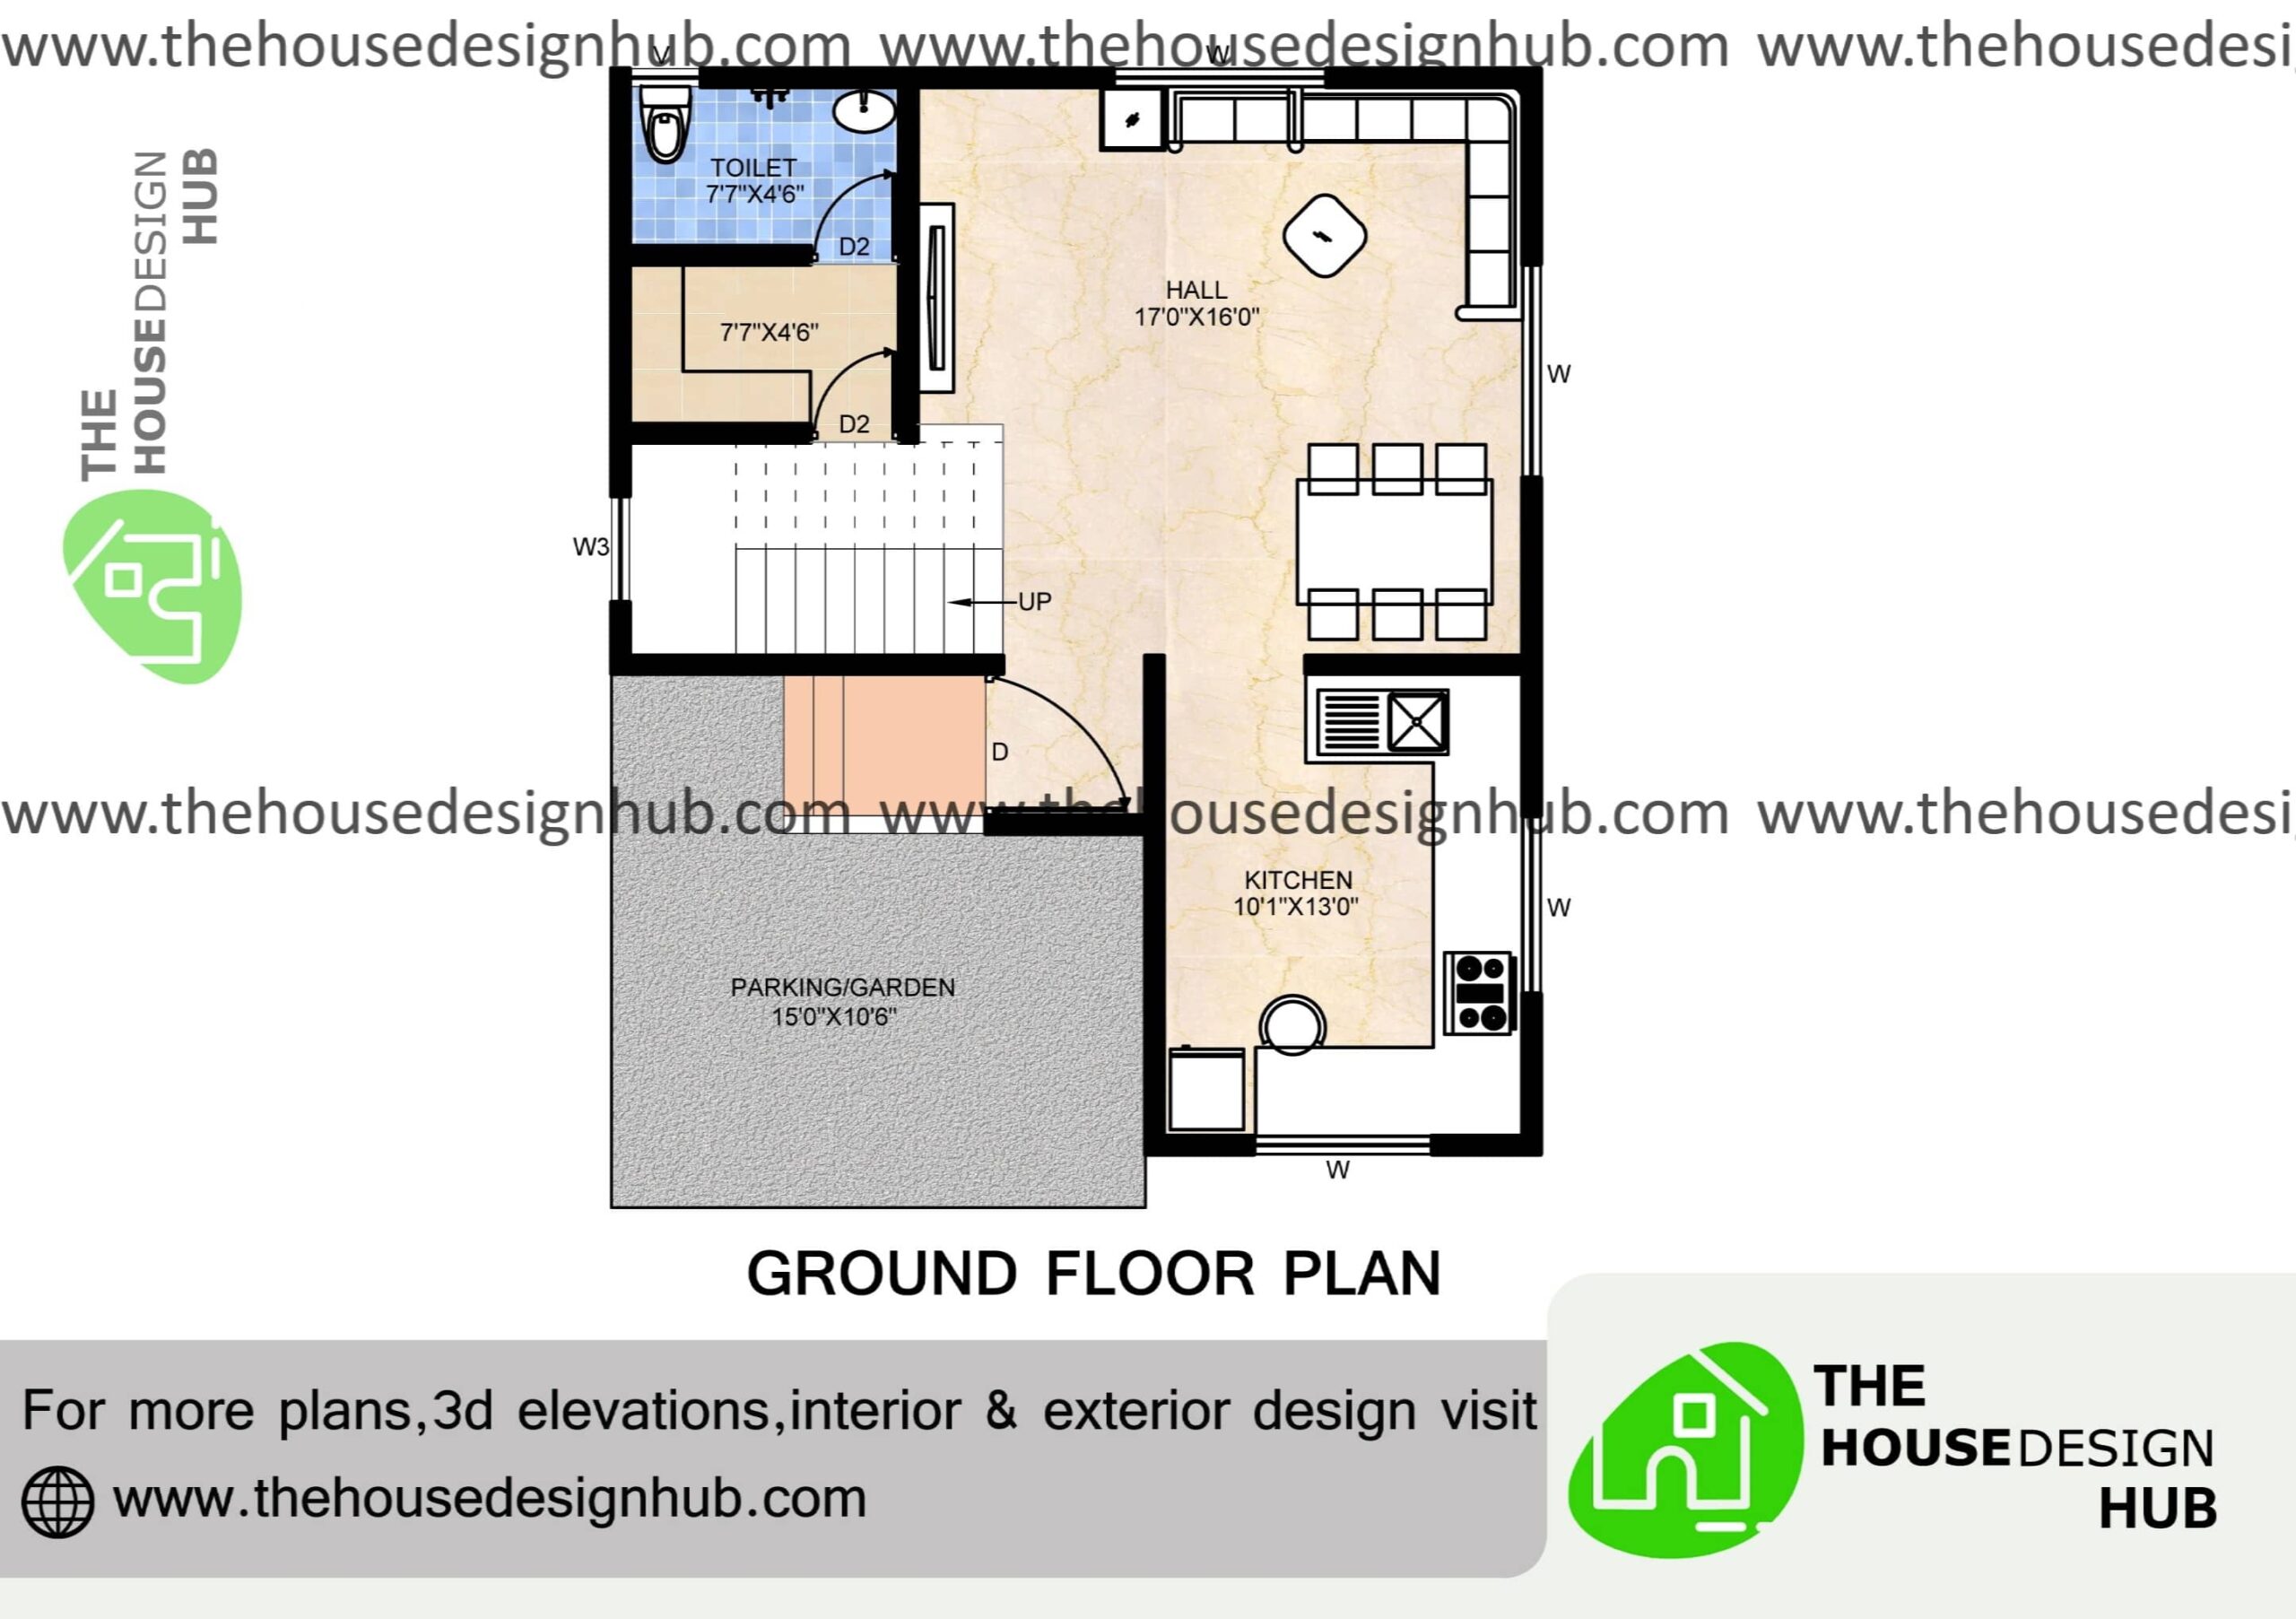 26 X 30 Ft 2 BHK Duplex House Design Plan Under 1500 Sq Ft